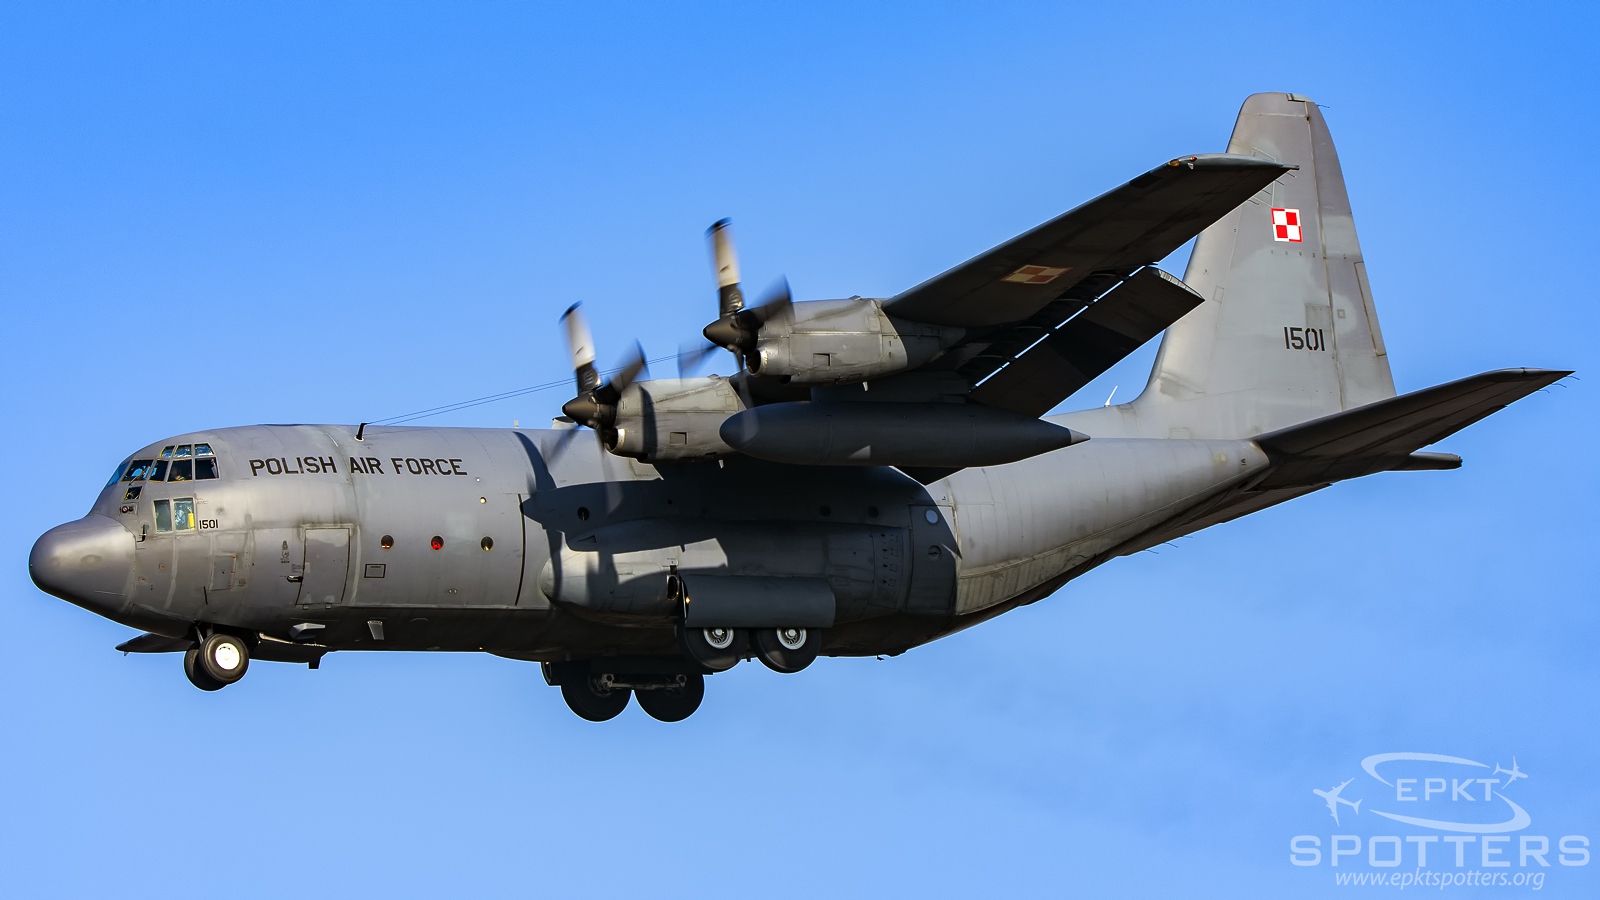 1501 - Lockheed C-130 E Hercules (Poland - Air Force) / Balice - Krakow Poland [EPKK/KRK]